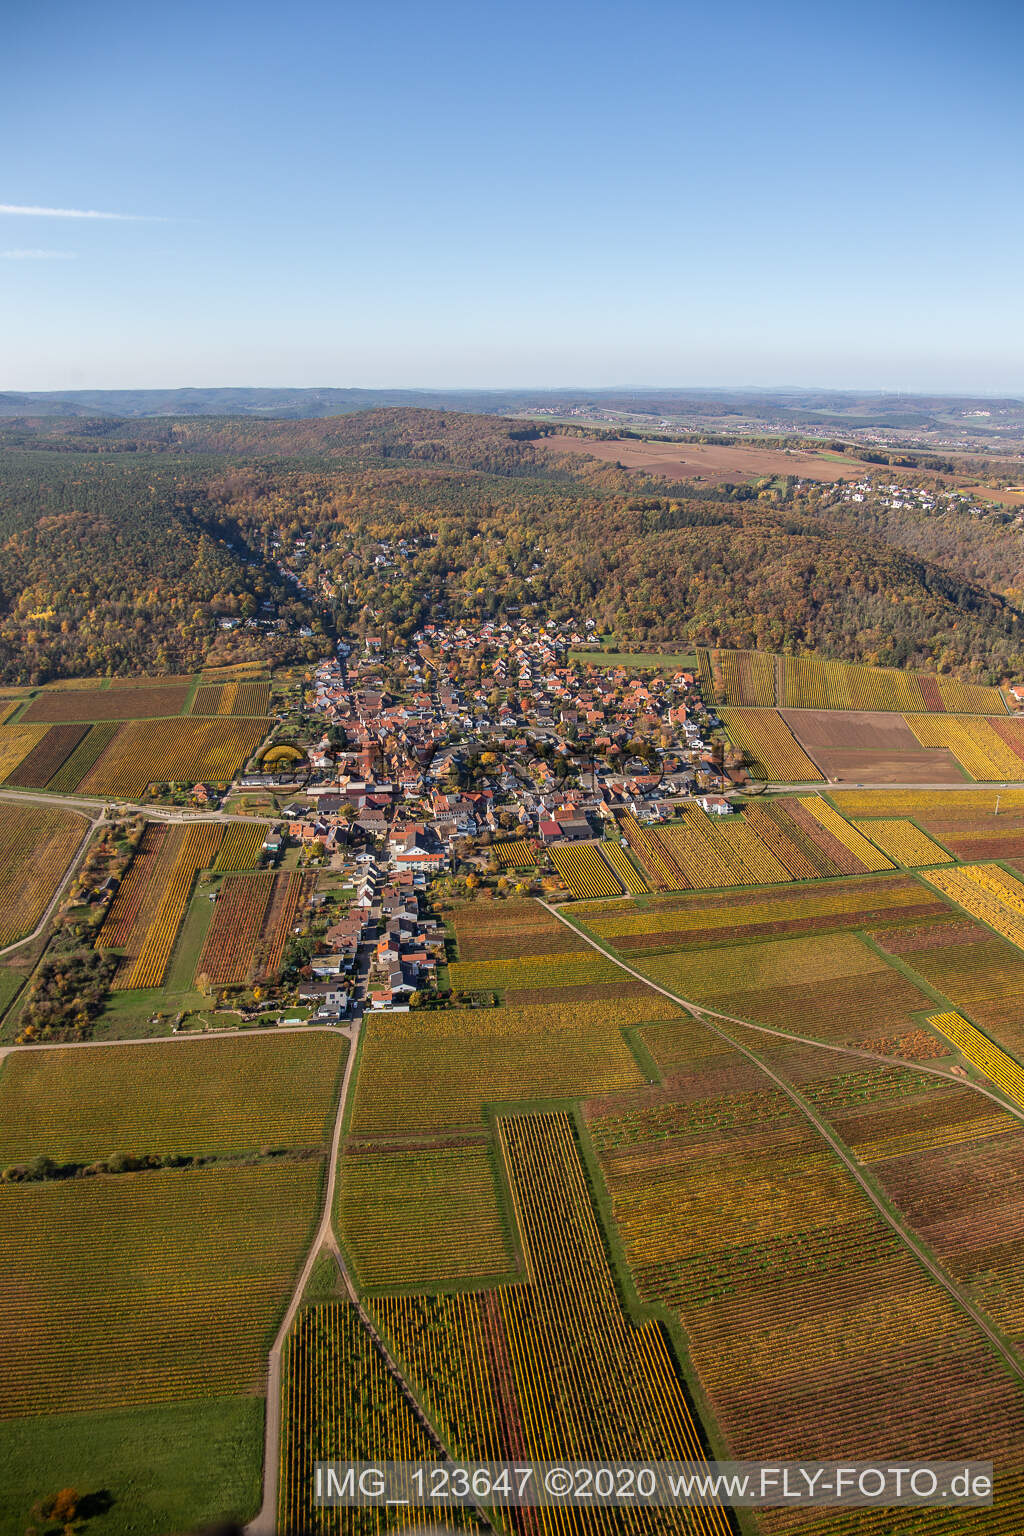 Vue aérienne de Vignobles décolorés d'automne dans la plaine du Rhin, en bordure du Haardt à Bobenheim am Berg dans le département Rhénanie-Palatinat, Allemagne